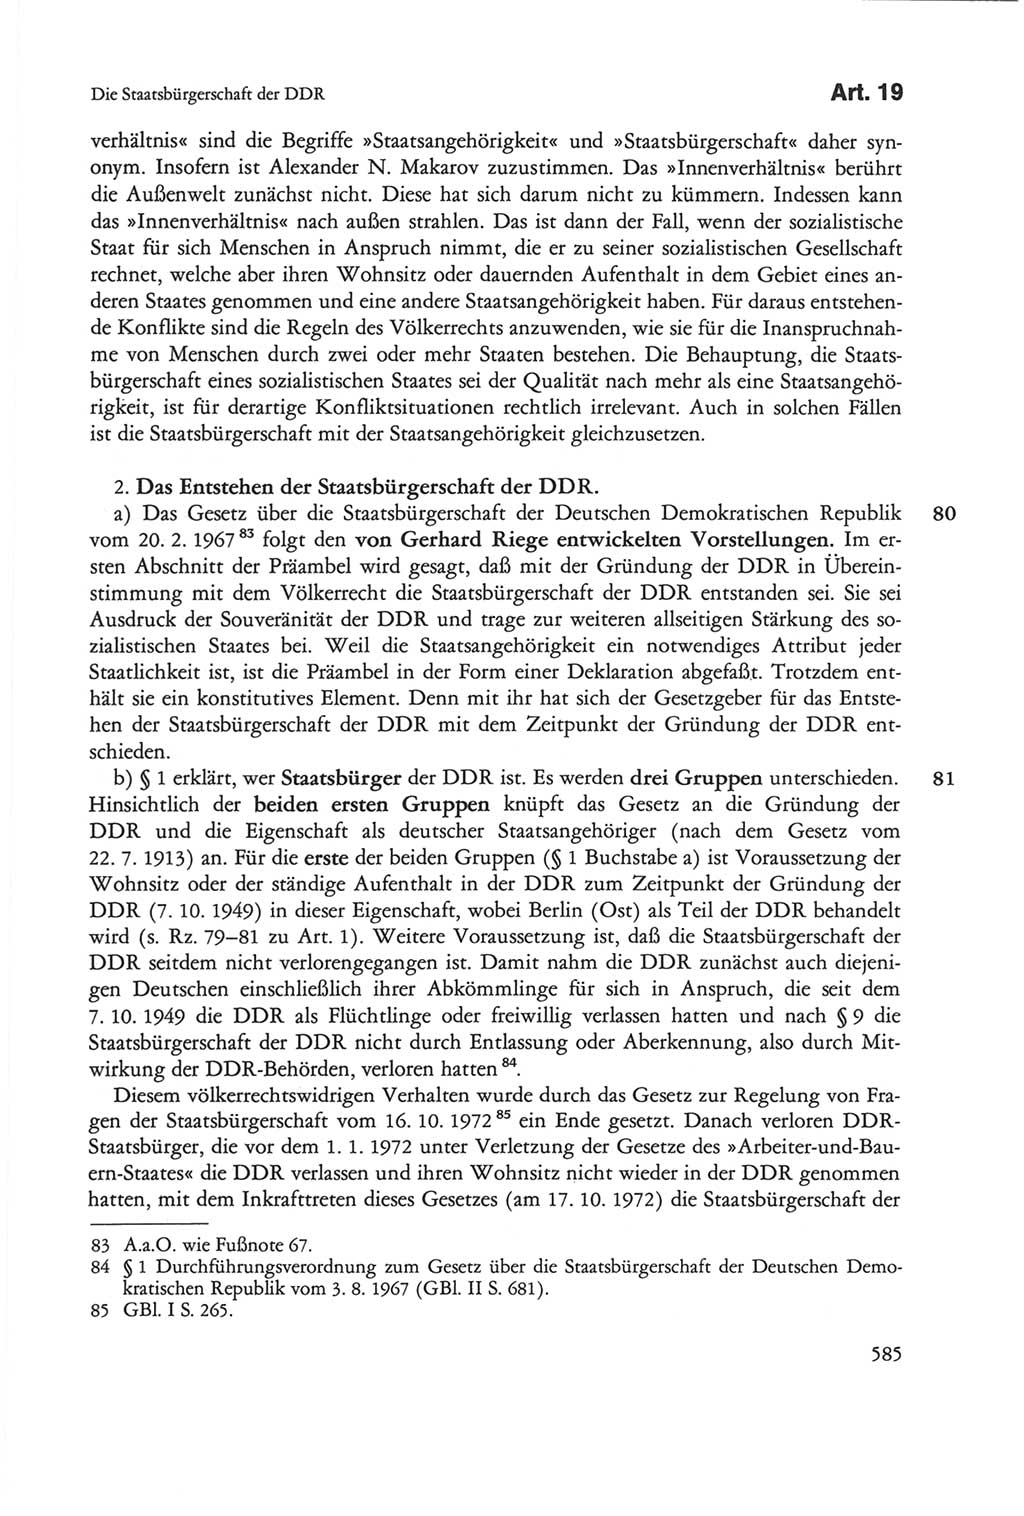 Die sozialistische Verfassung der Deutschen Demokratischen Republik (DDR), Kommentar 1982, Seite 585 (Soz. Verf. DDR Komm. 1982, S. 585)